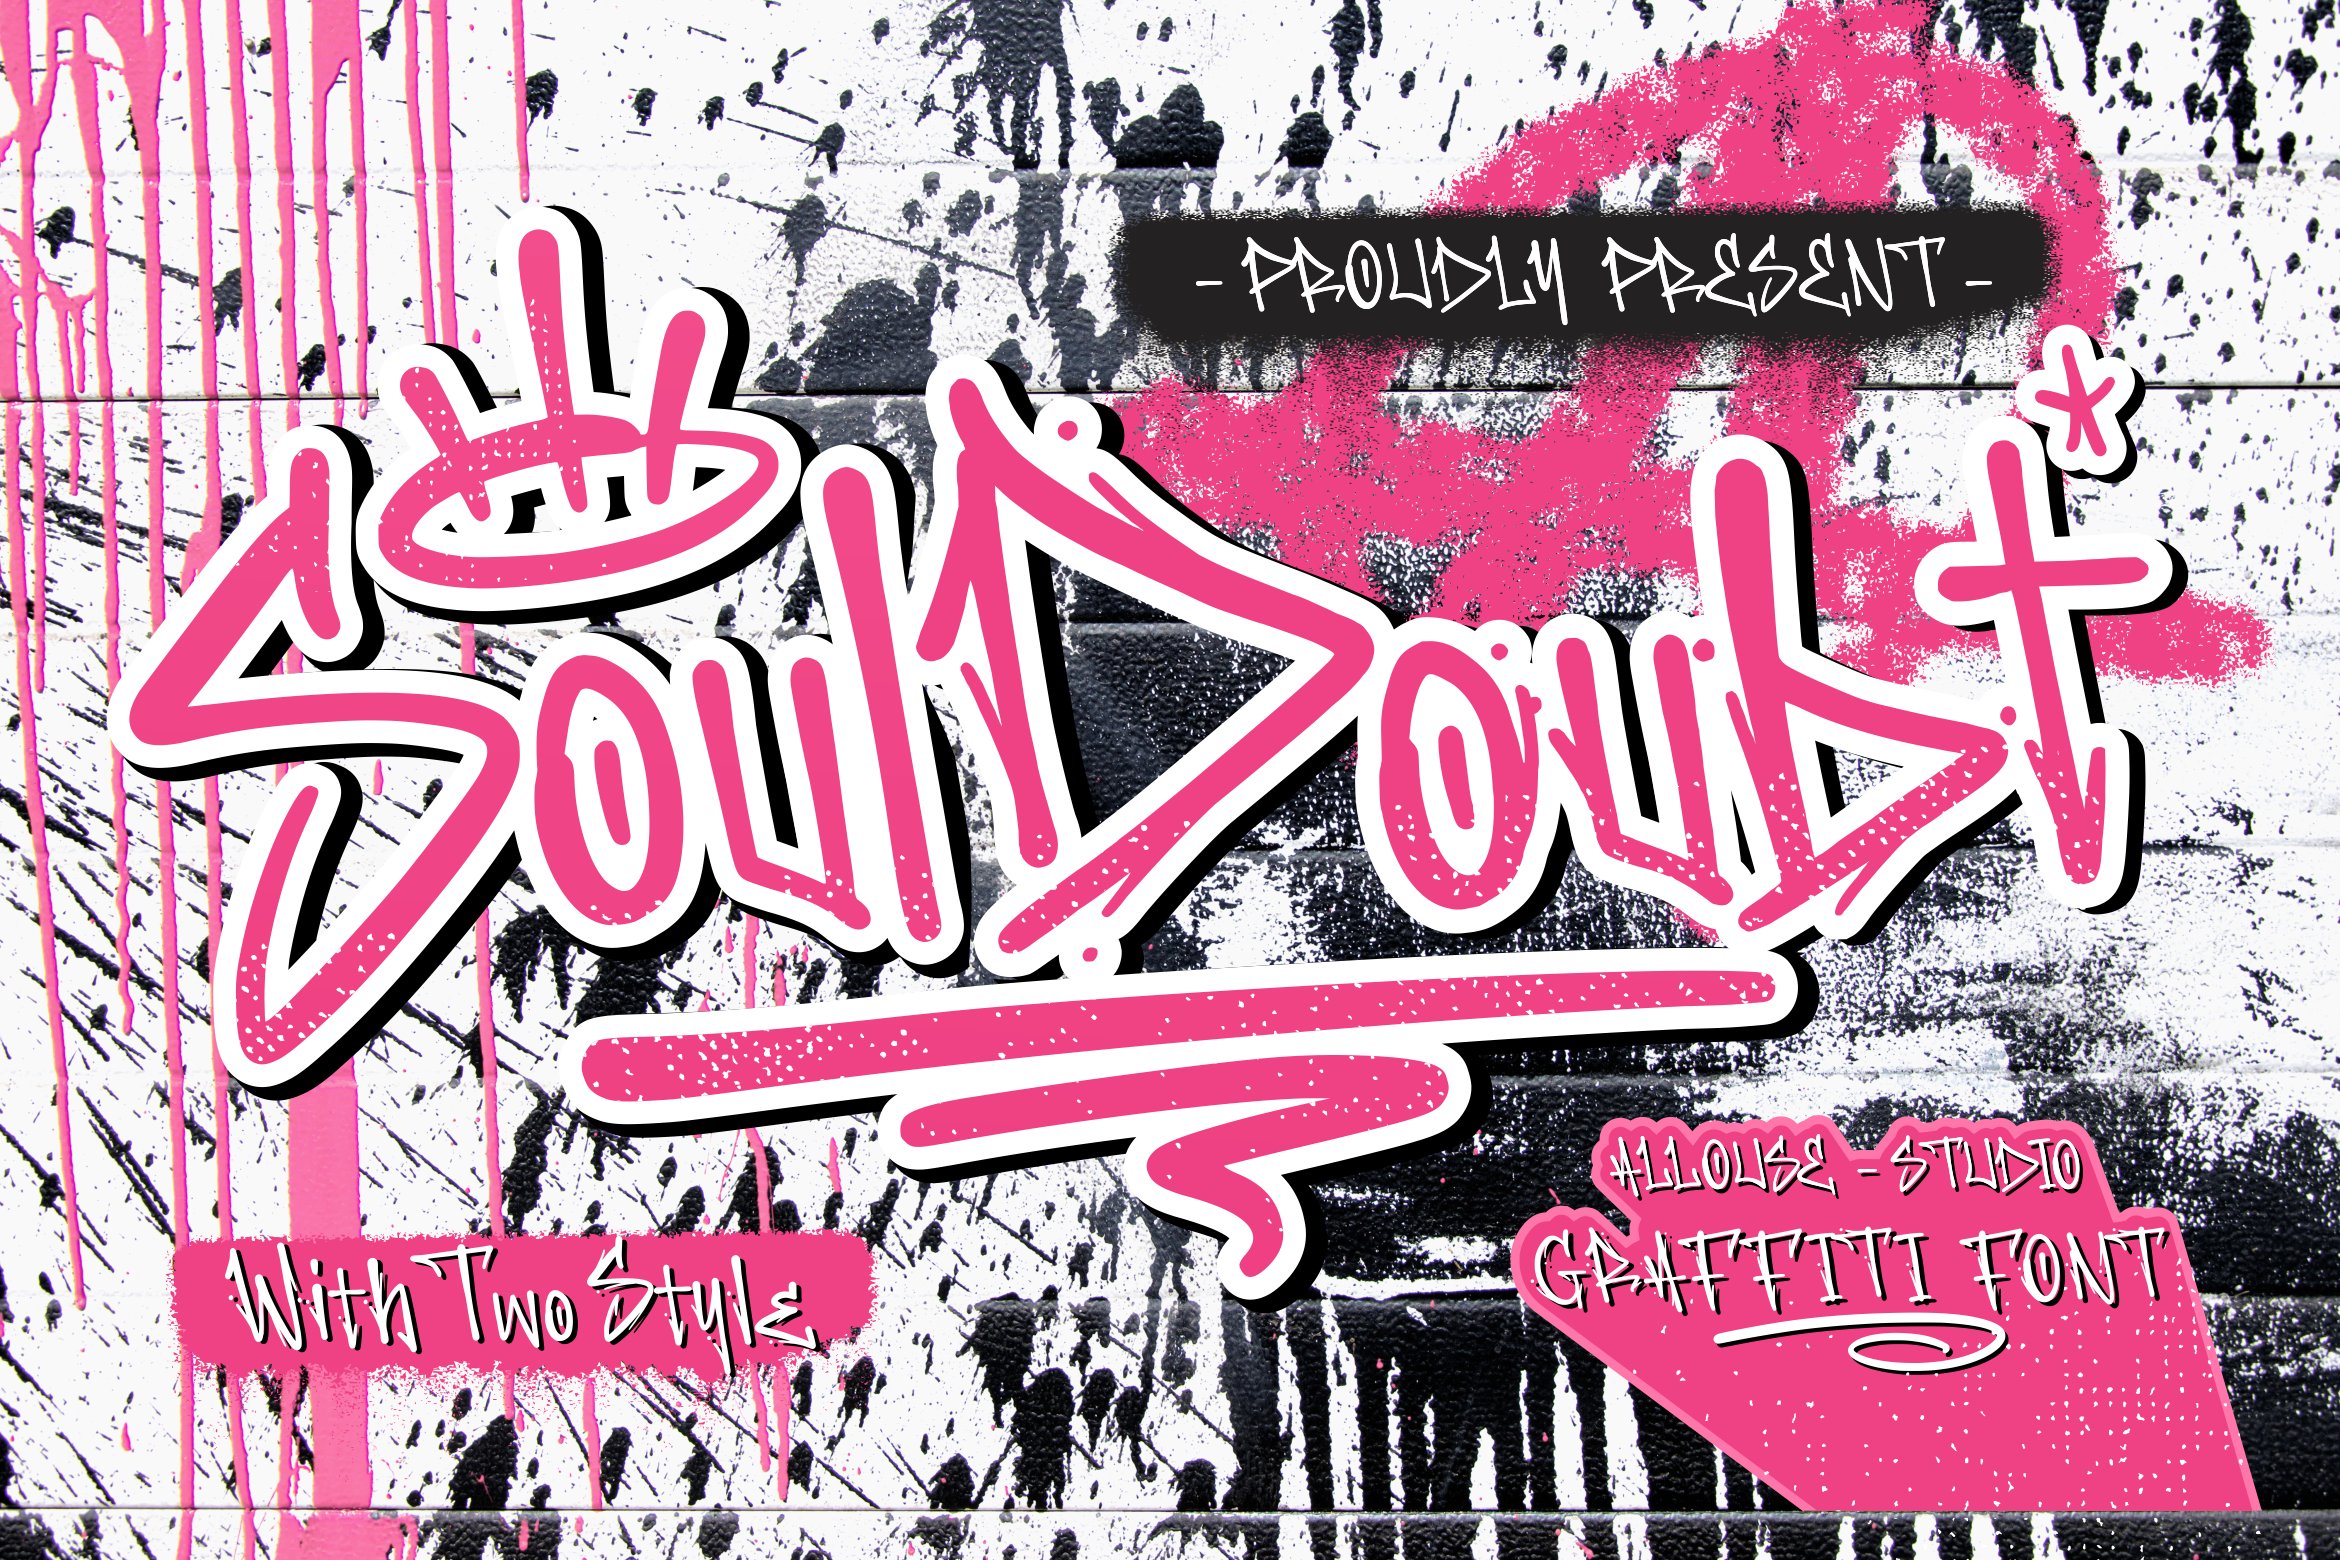 Soul Doubt Font cover image.